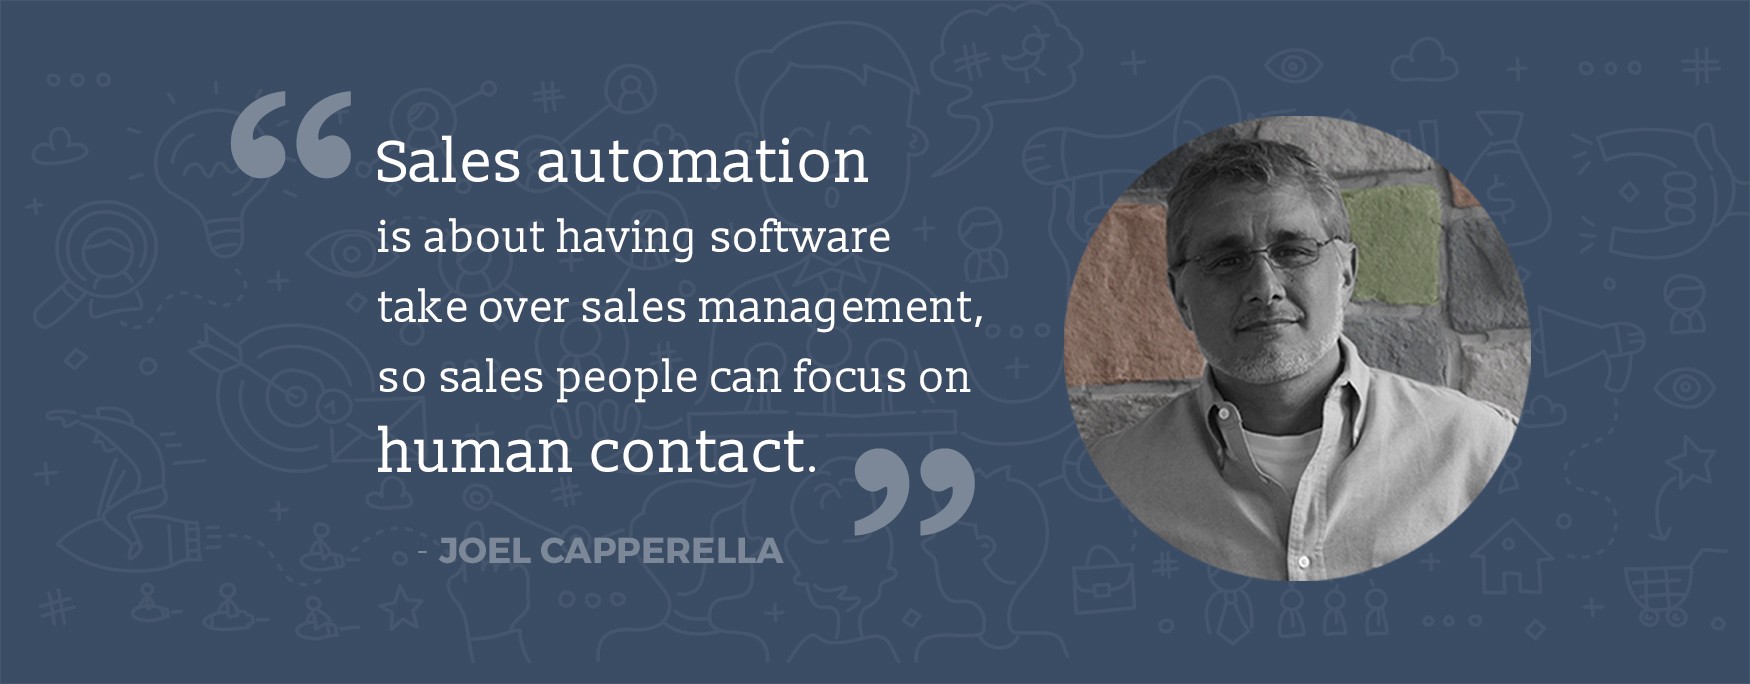 L'automatisation des ventes consiste à faire en sorte que les logiciels prennent en charge la gestion des ventes afin que les commerciaux puissent se concentrer sur le contact humain, par Joel Capperella